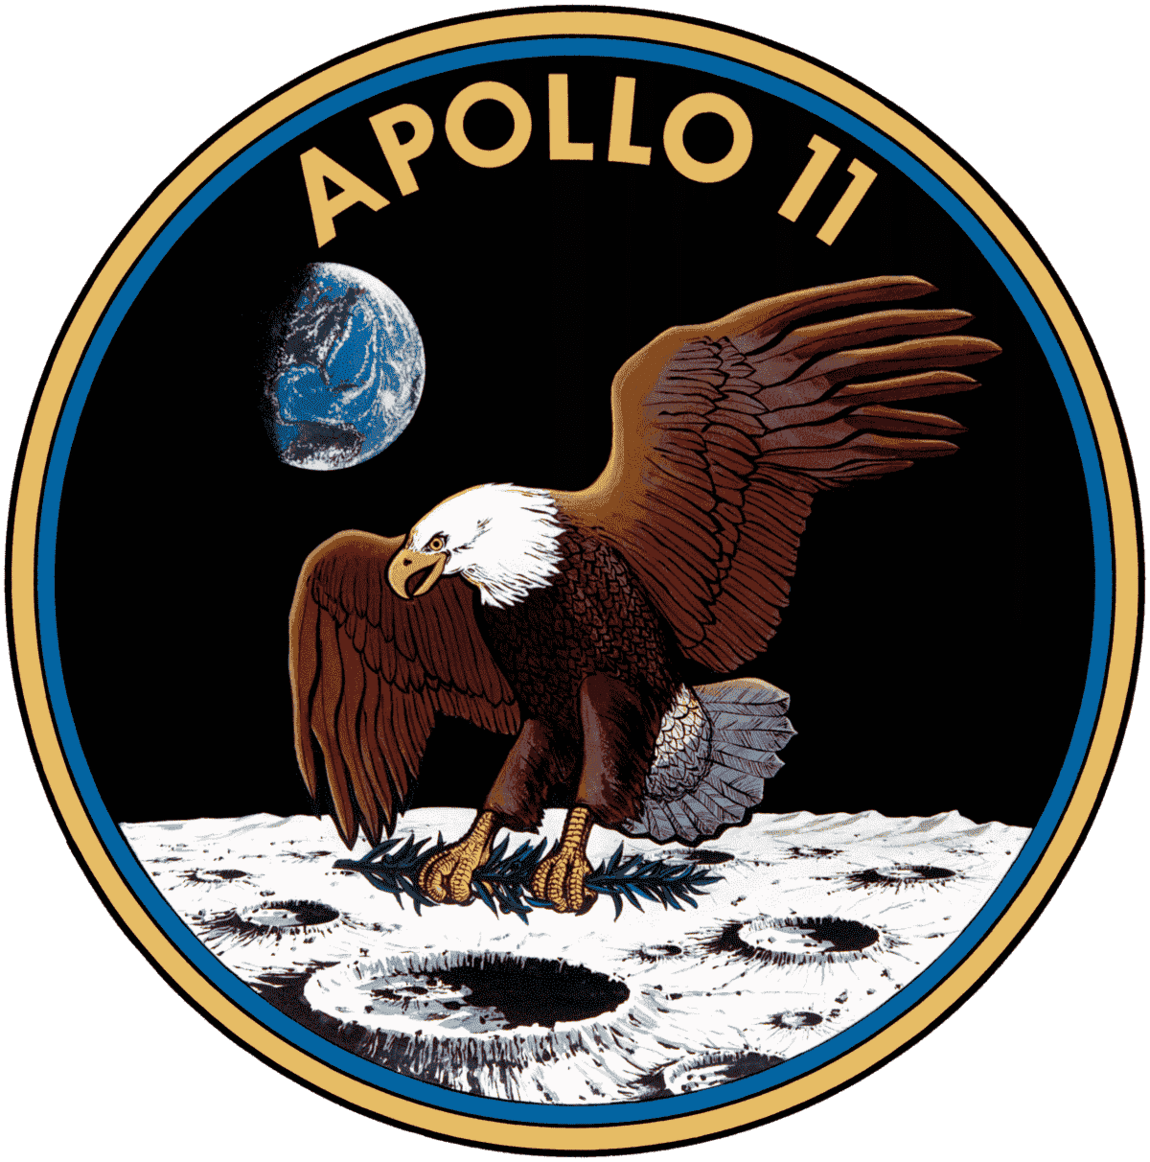 Apollo11 mission badge